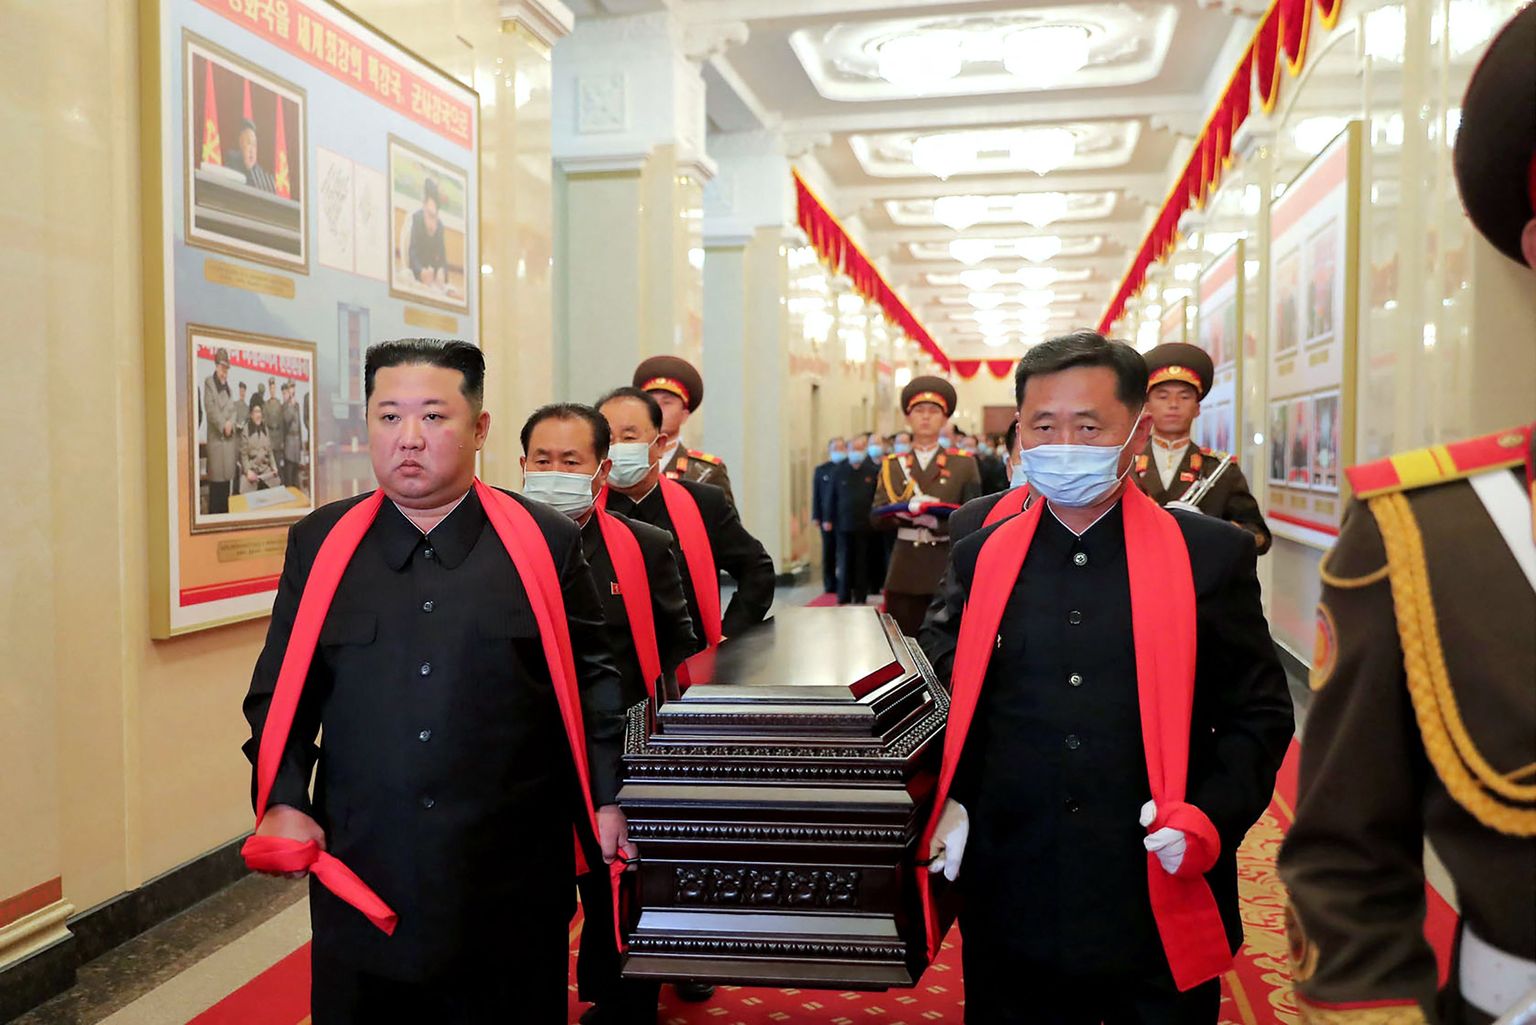 Põhja-Korea riikliku uudisteagentuuri KCNA avaldatud foto, millel riigijuht Kim Jong-Un (vasakul) kannab marssal Hyon Chol-hae kirstu. Matus toimus 22. mail 2022